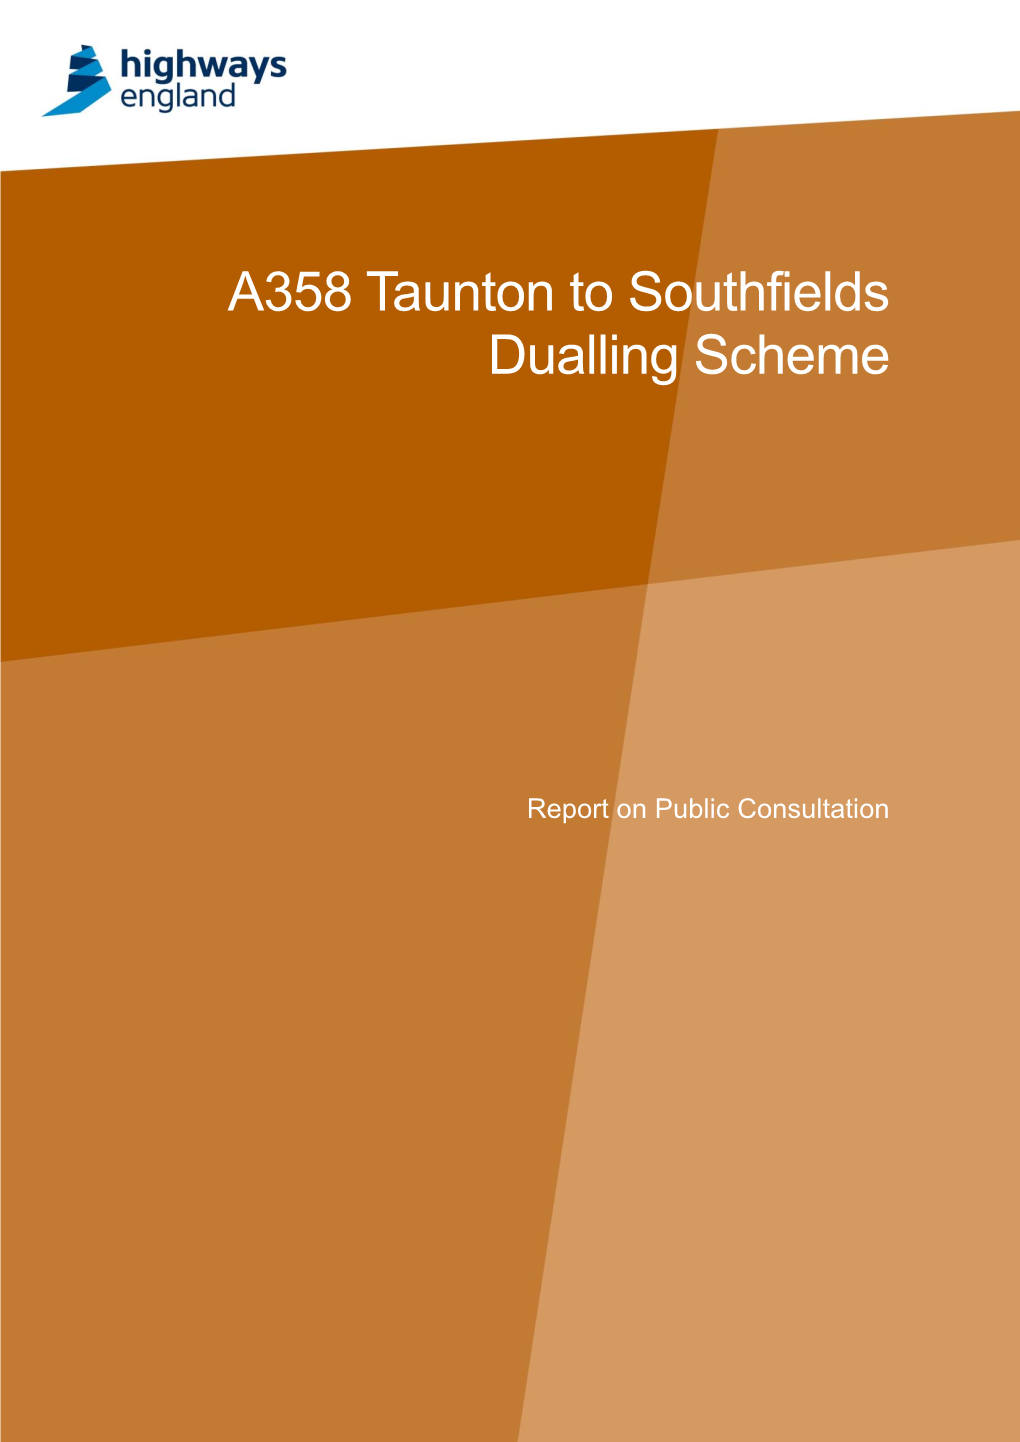 A358 Taunton to Southfields Dualling Scheme